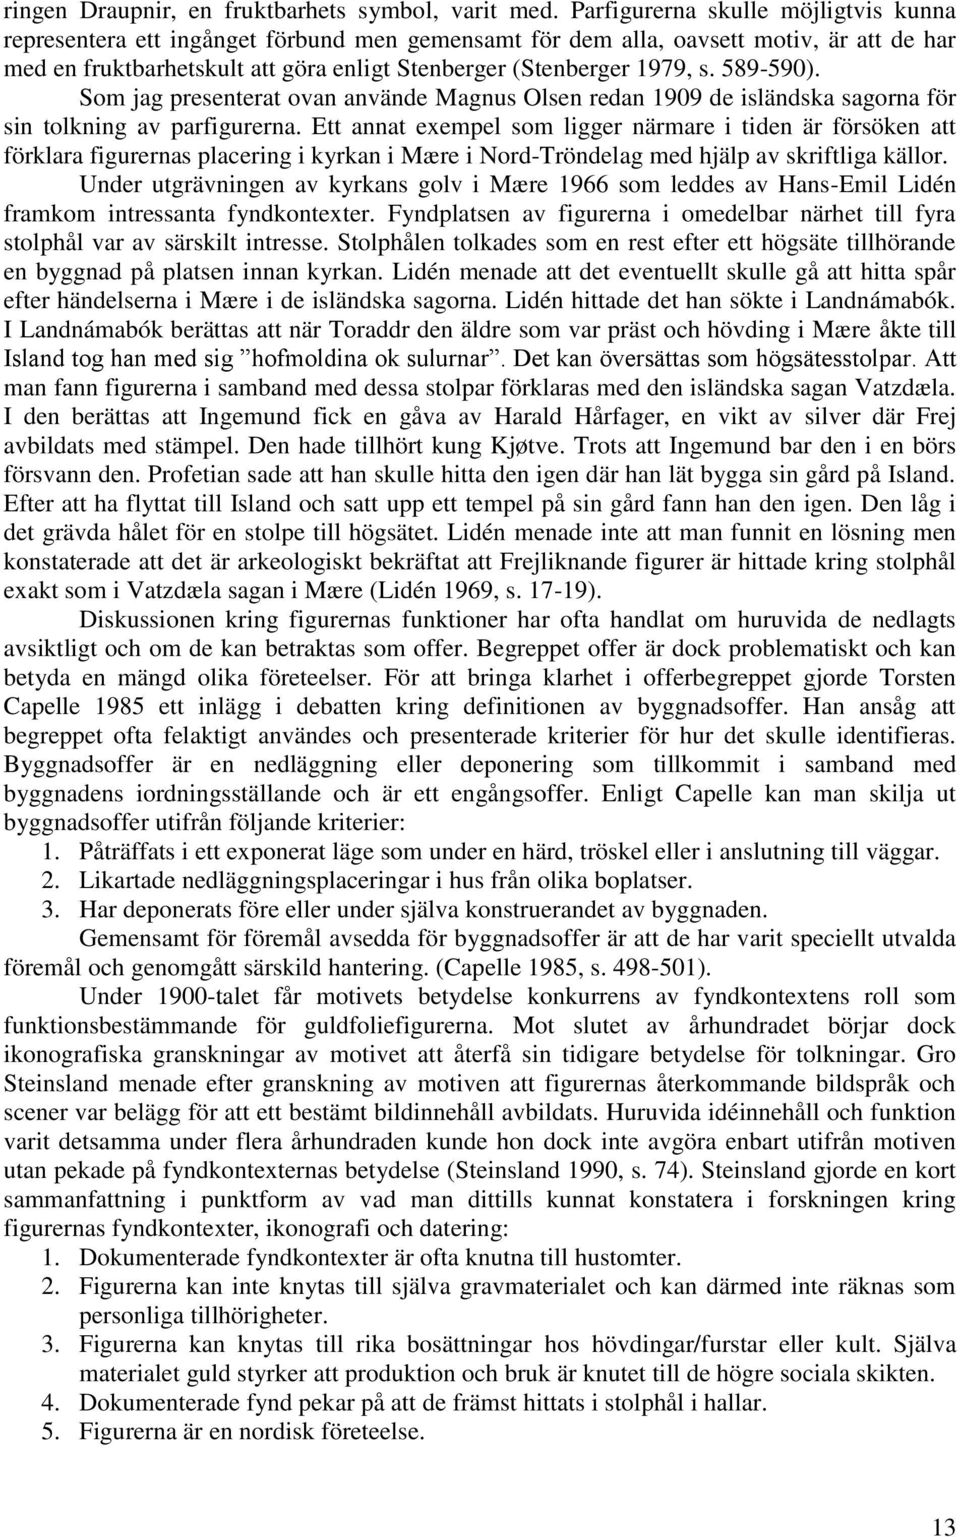 589-590). Som jag presenterat ovan använde Magnus Olsen redan 1909 de isländska sagorna för sin tolkning av parfigurerna.